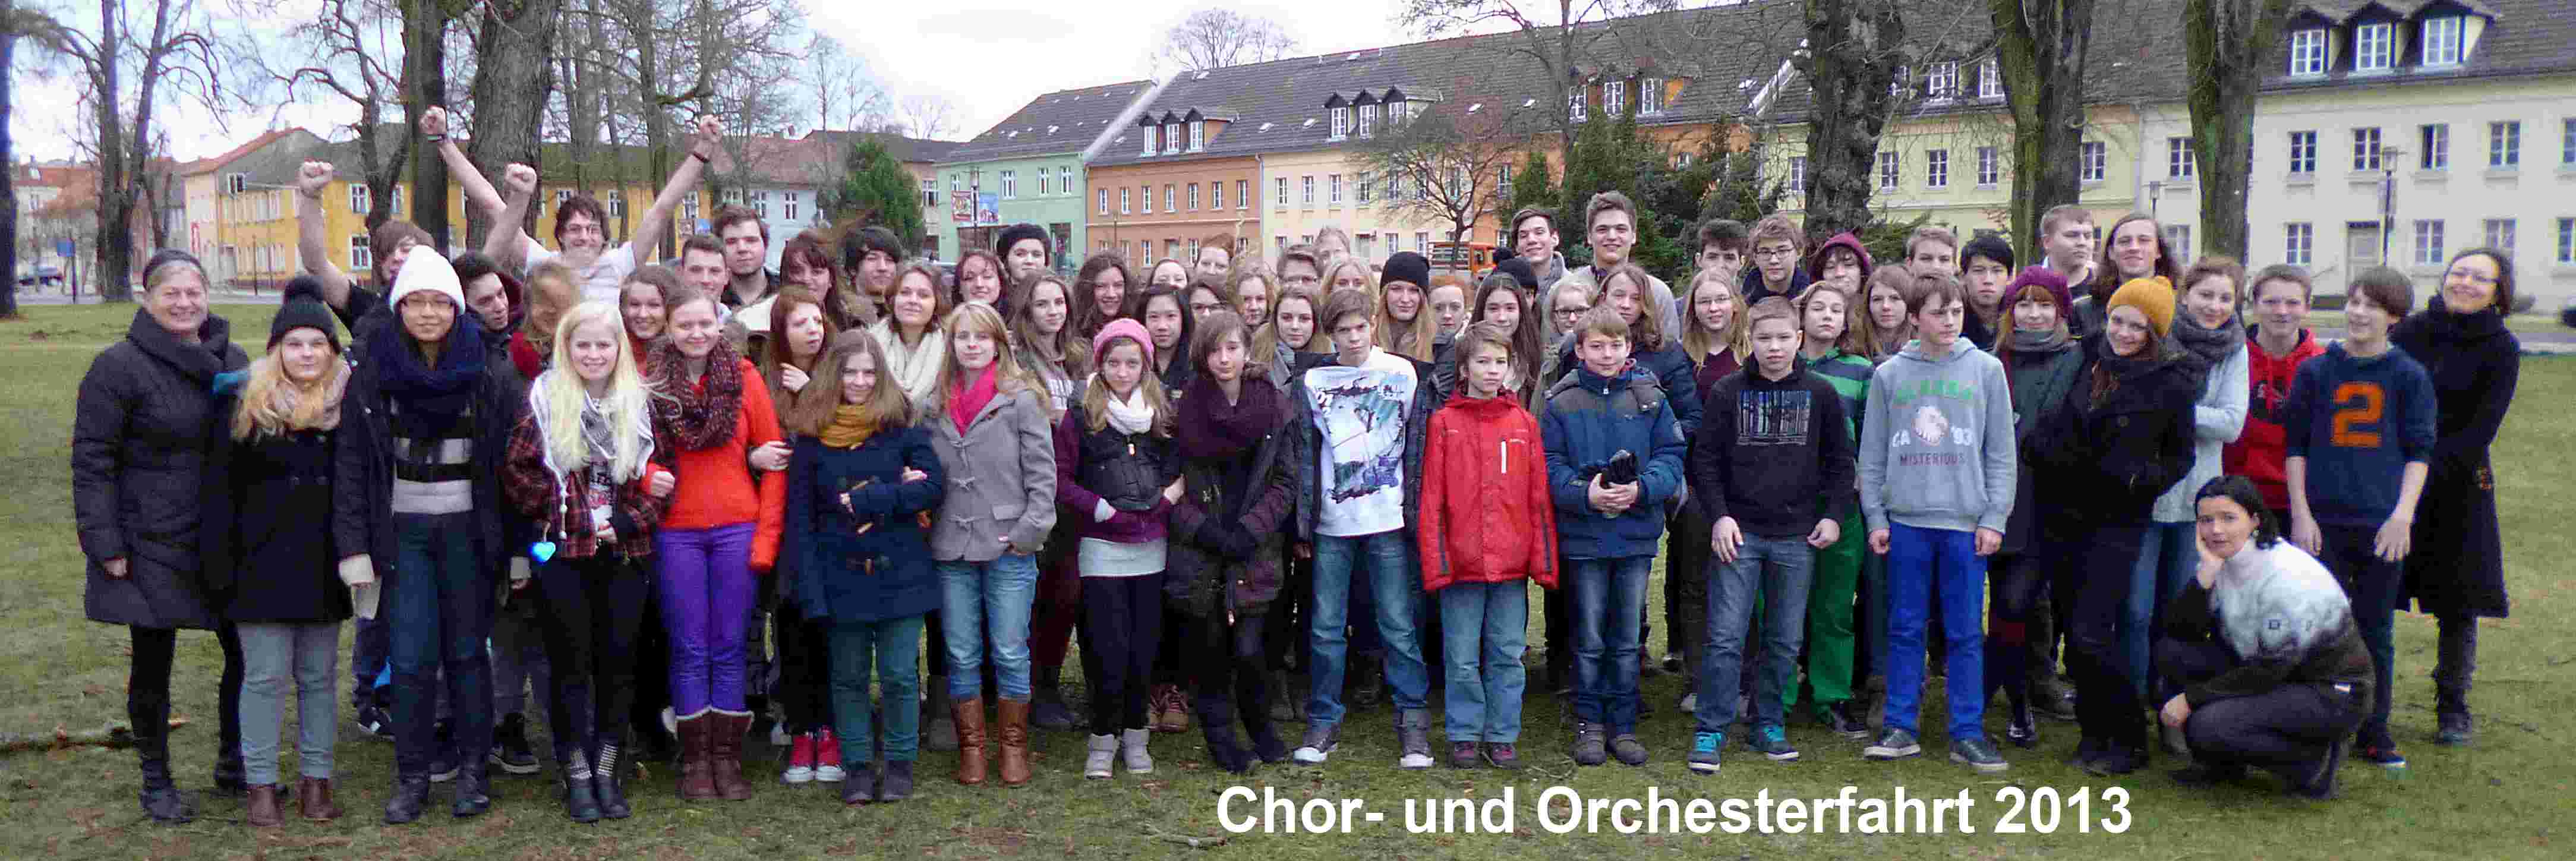 Chor- und Orchesterfahrt 2013